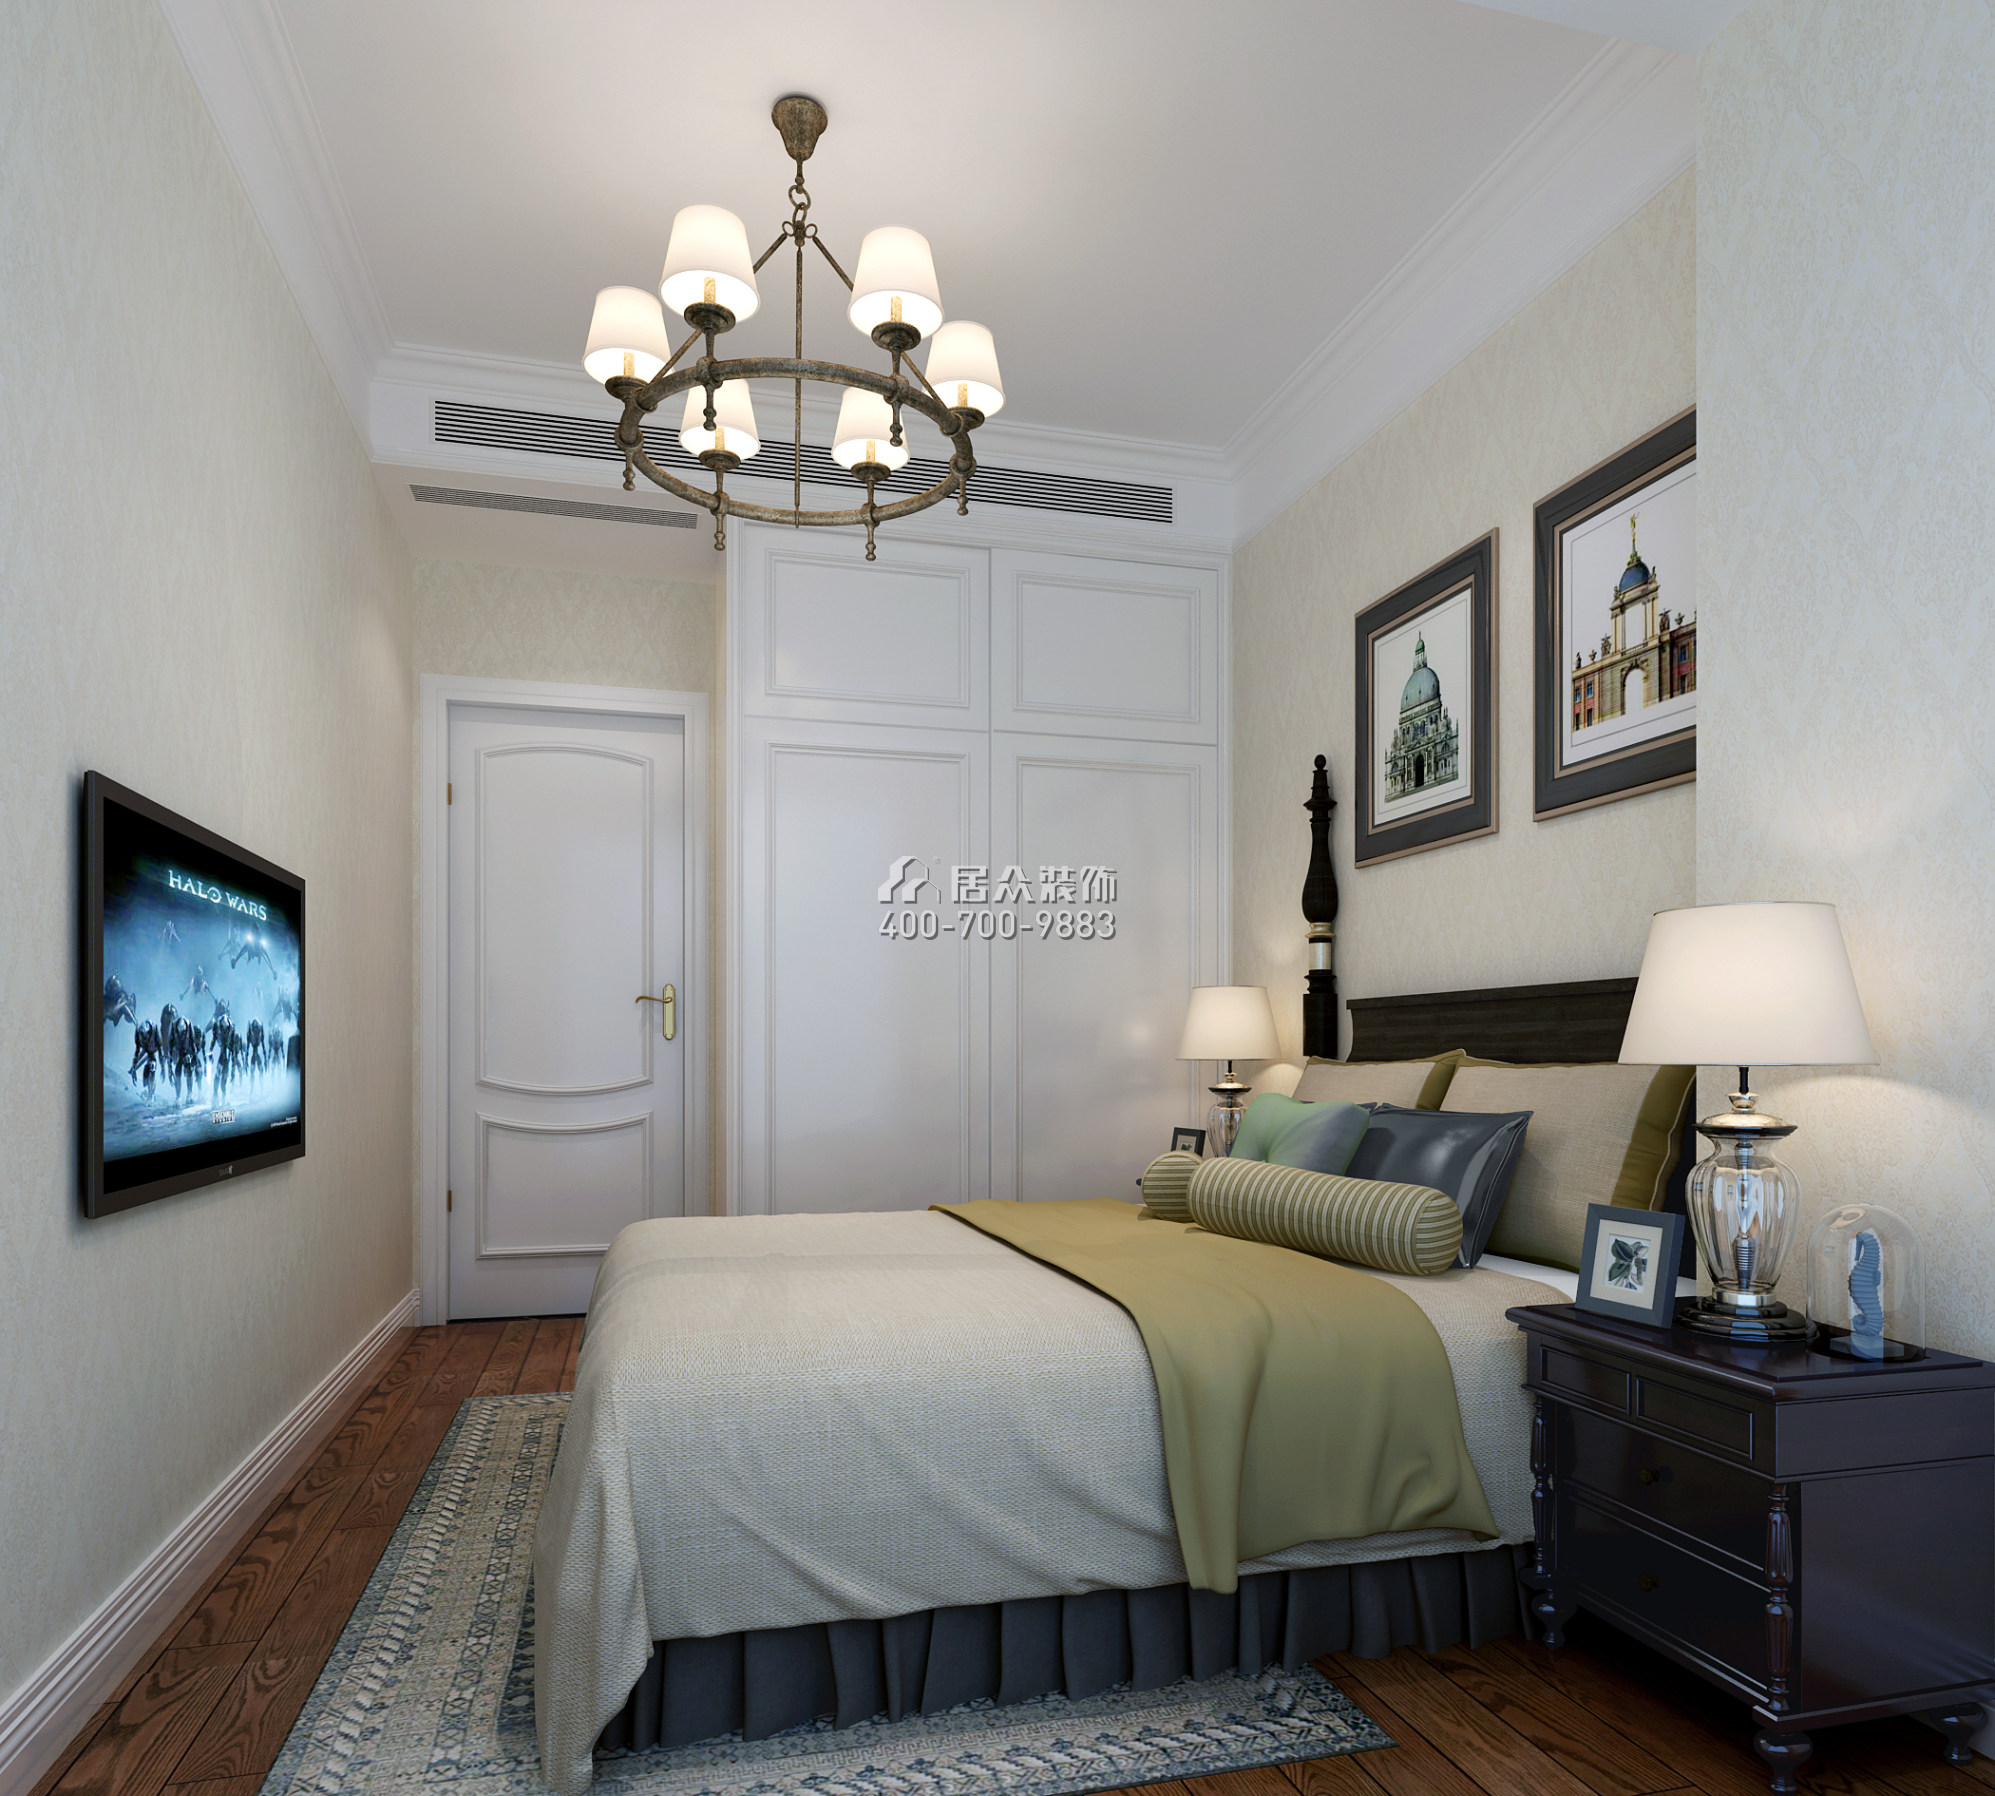 领航城领秀花园89平方米美式风格平层户型卧室装修效果图